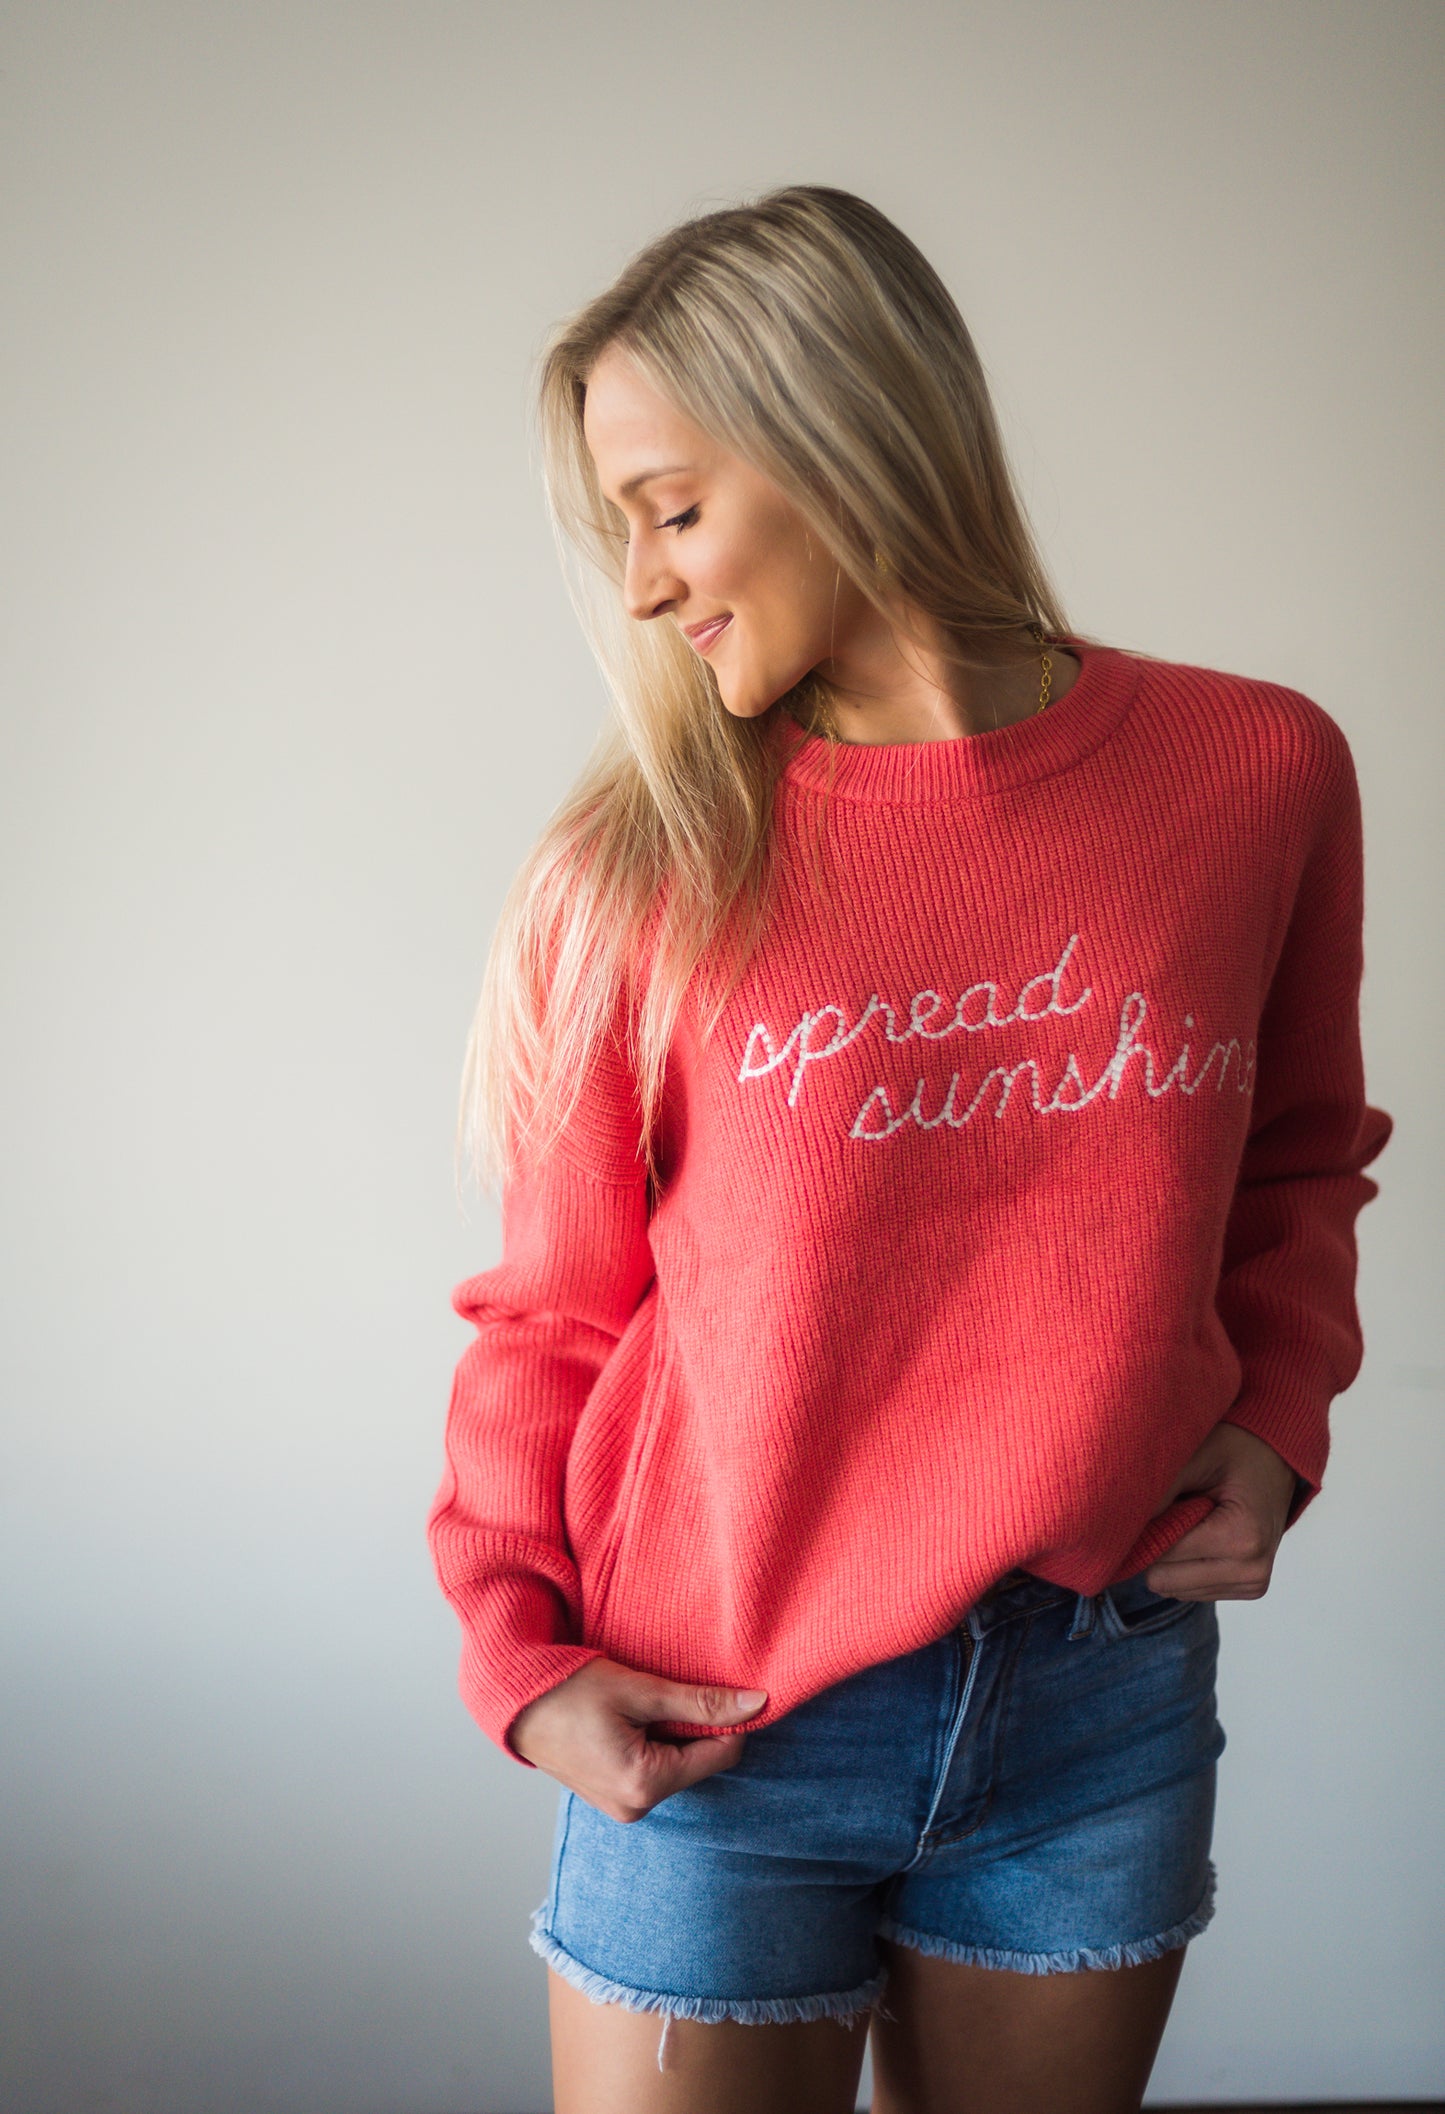 Spread Sunshine Sweater